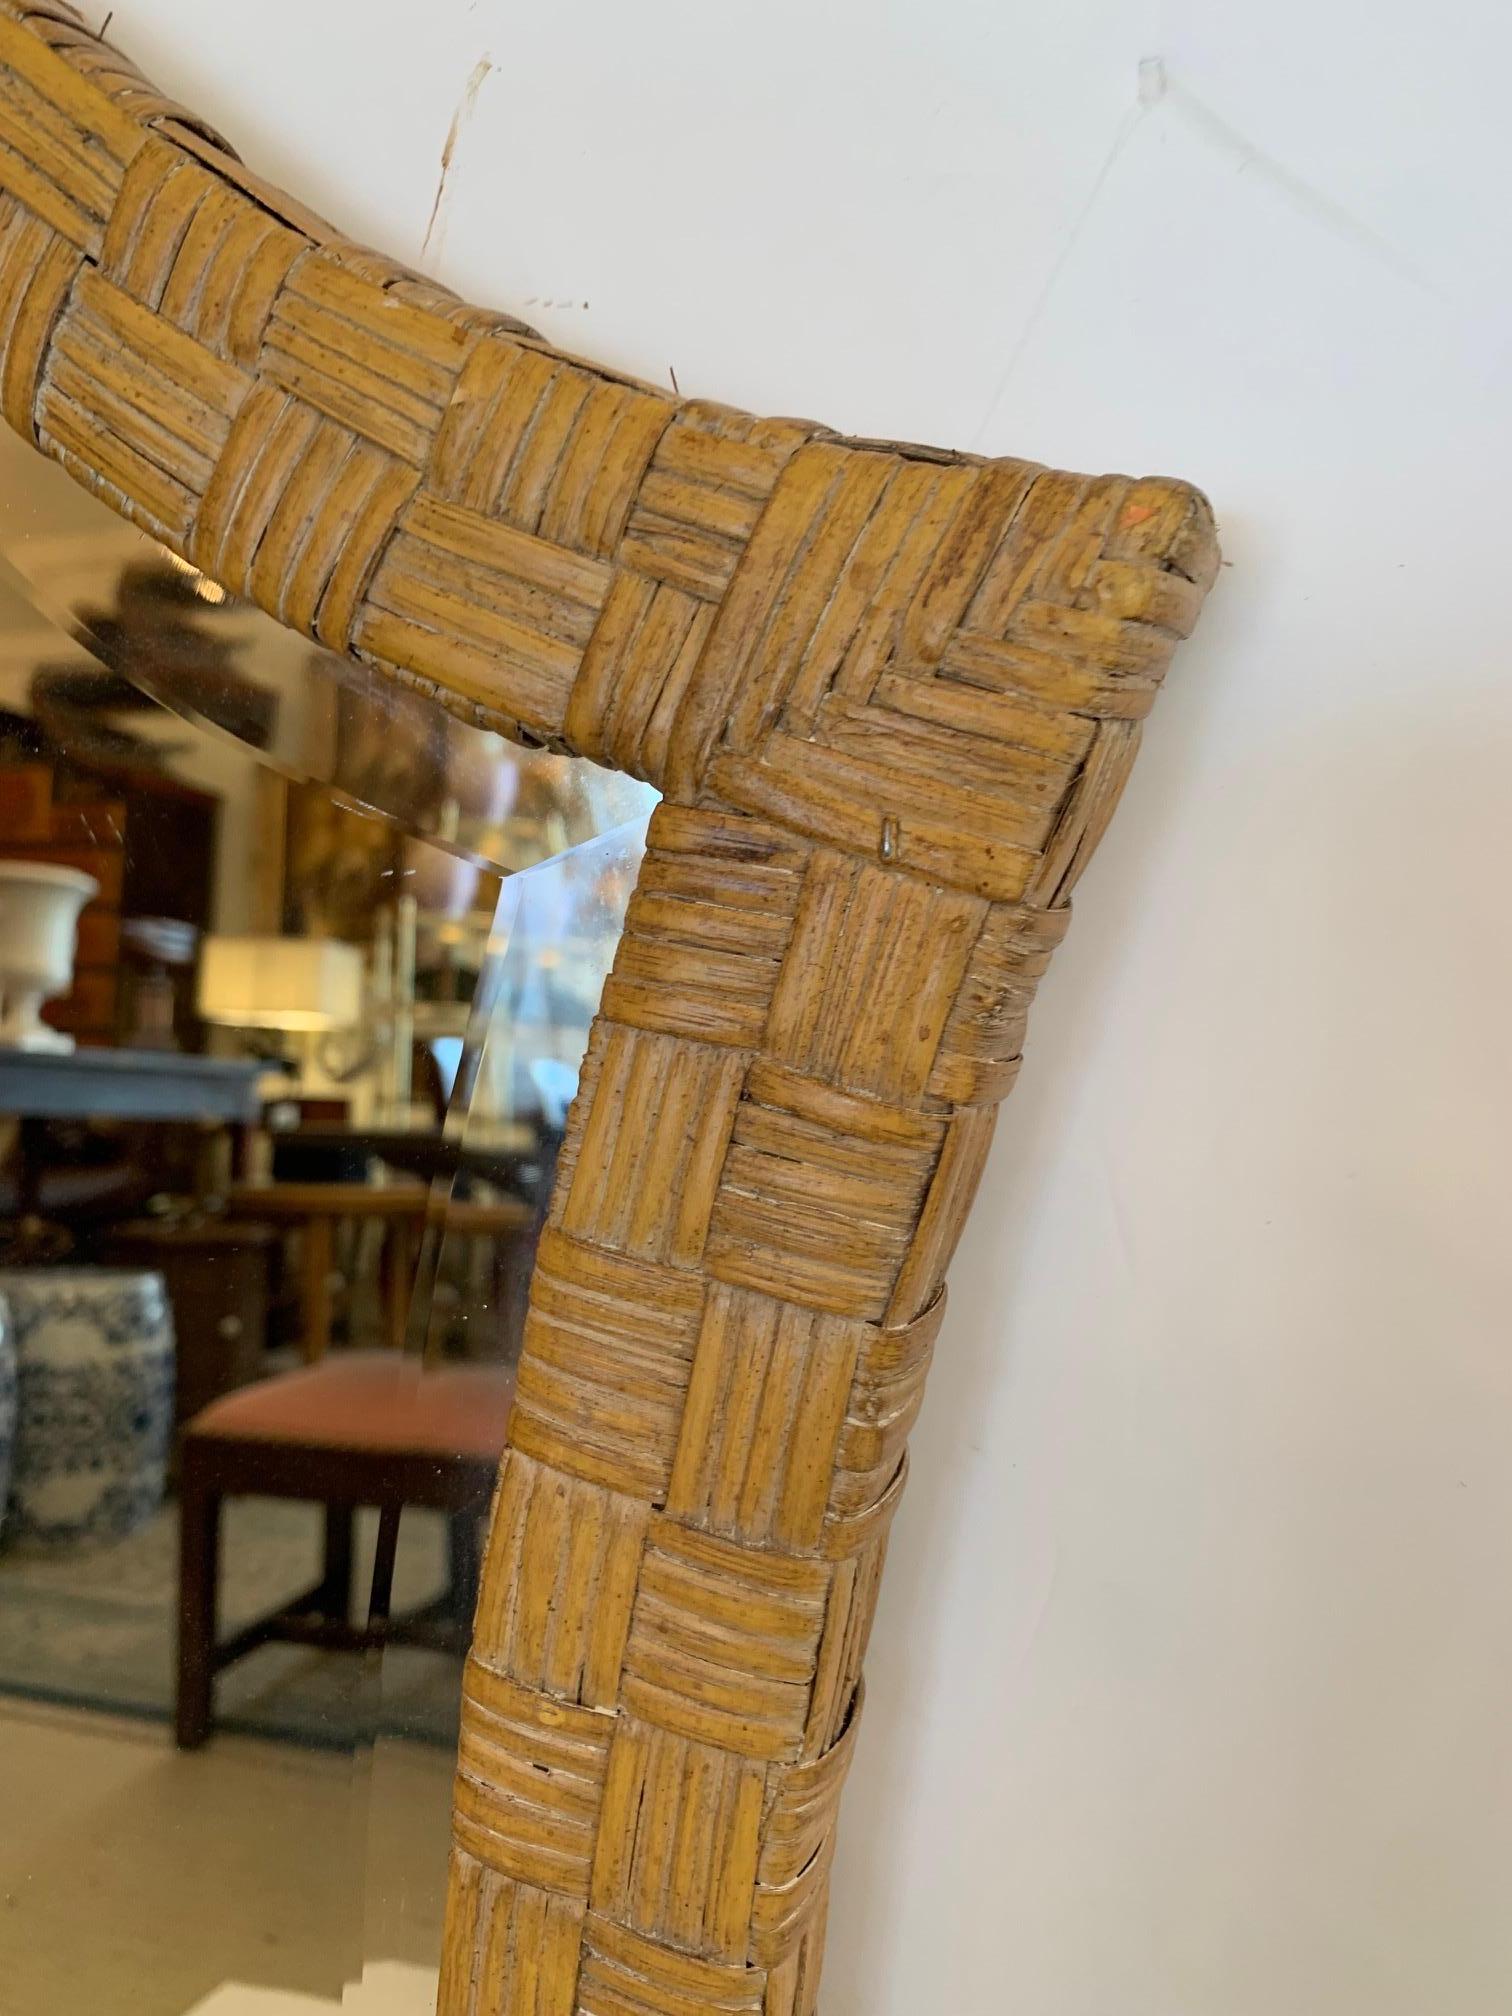 Superbe miroir moderne organique en rotin et bambou ayant une forme allongée inspirée des trous de serrure.